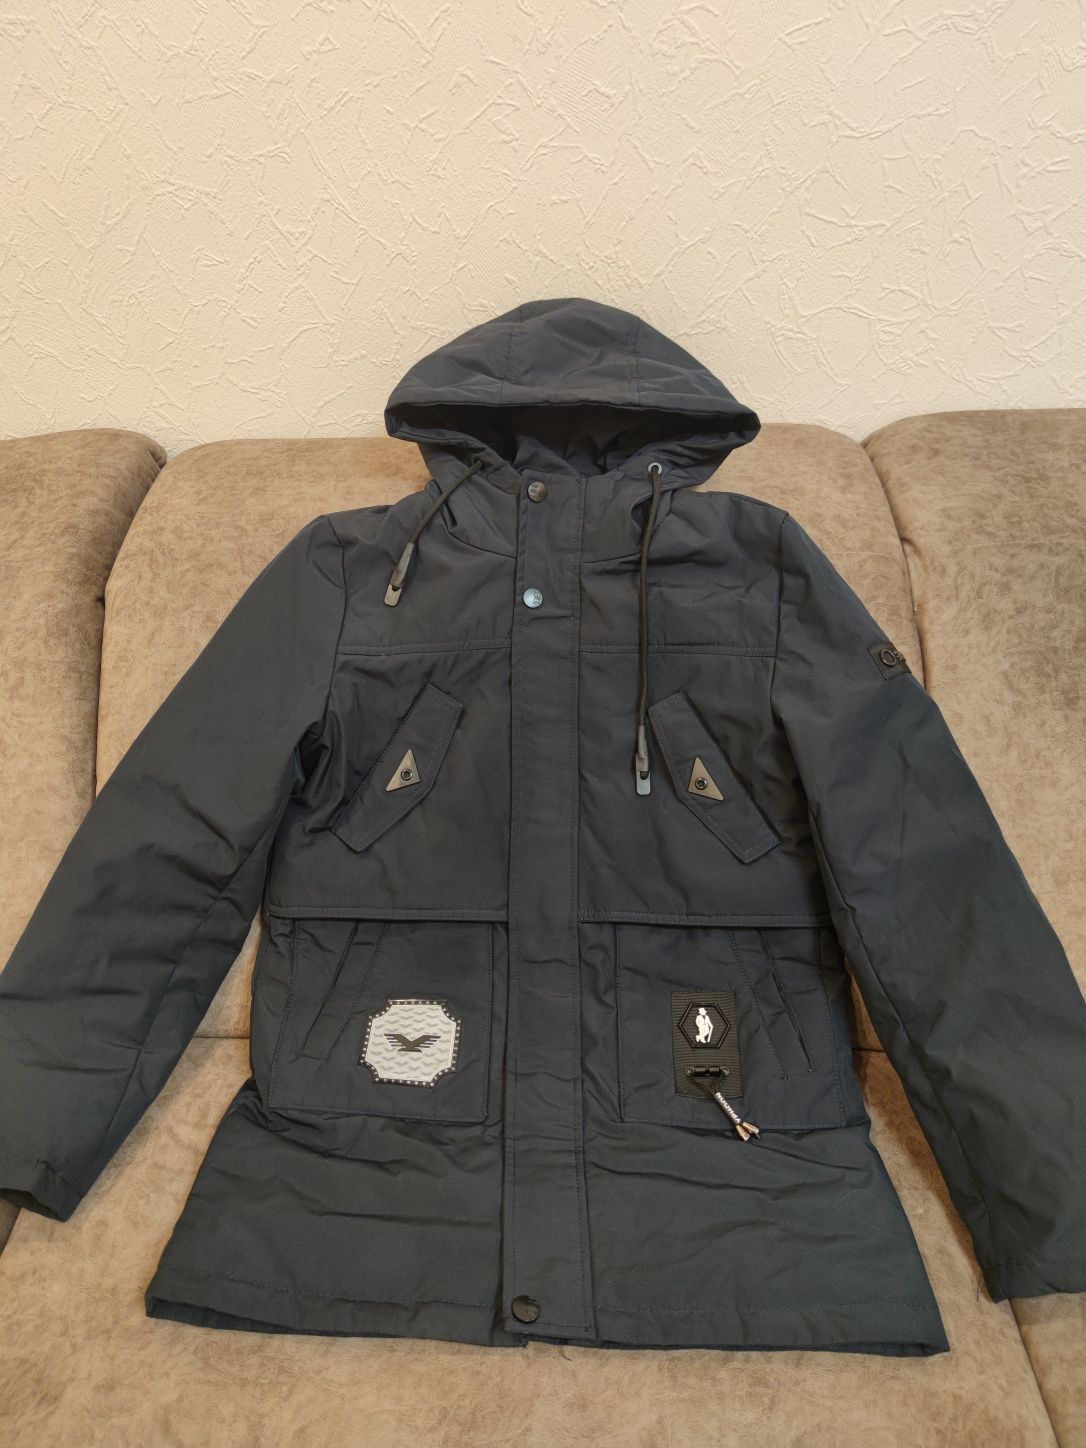 Куртка- пальто демисезонная на рост 152 см